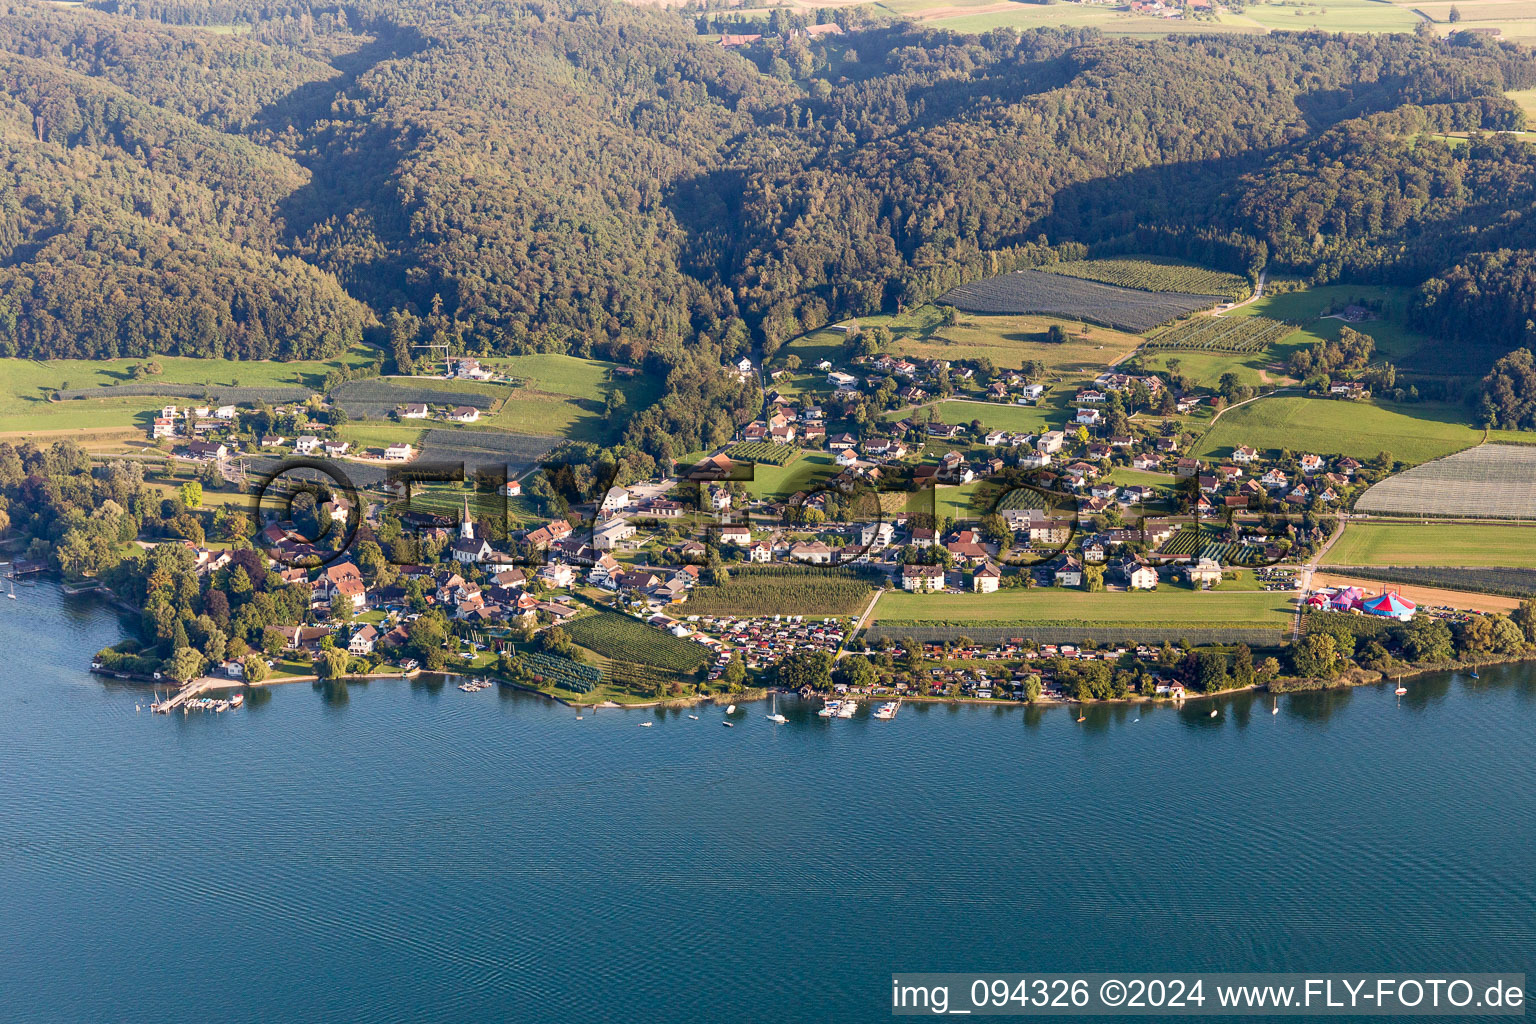 Vue aérienne de Zones riveraines du lac de Constance à Mammern dans le département Thurgovie, Suisse